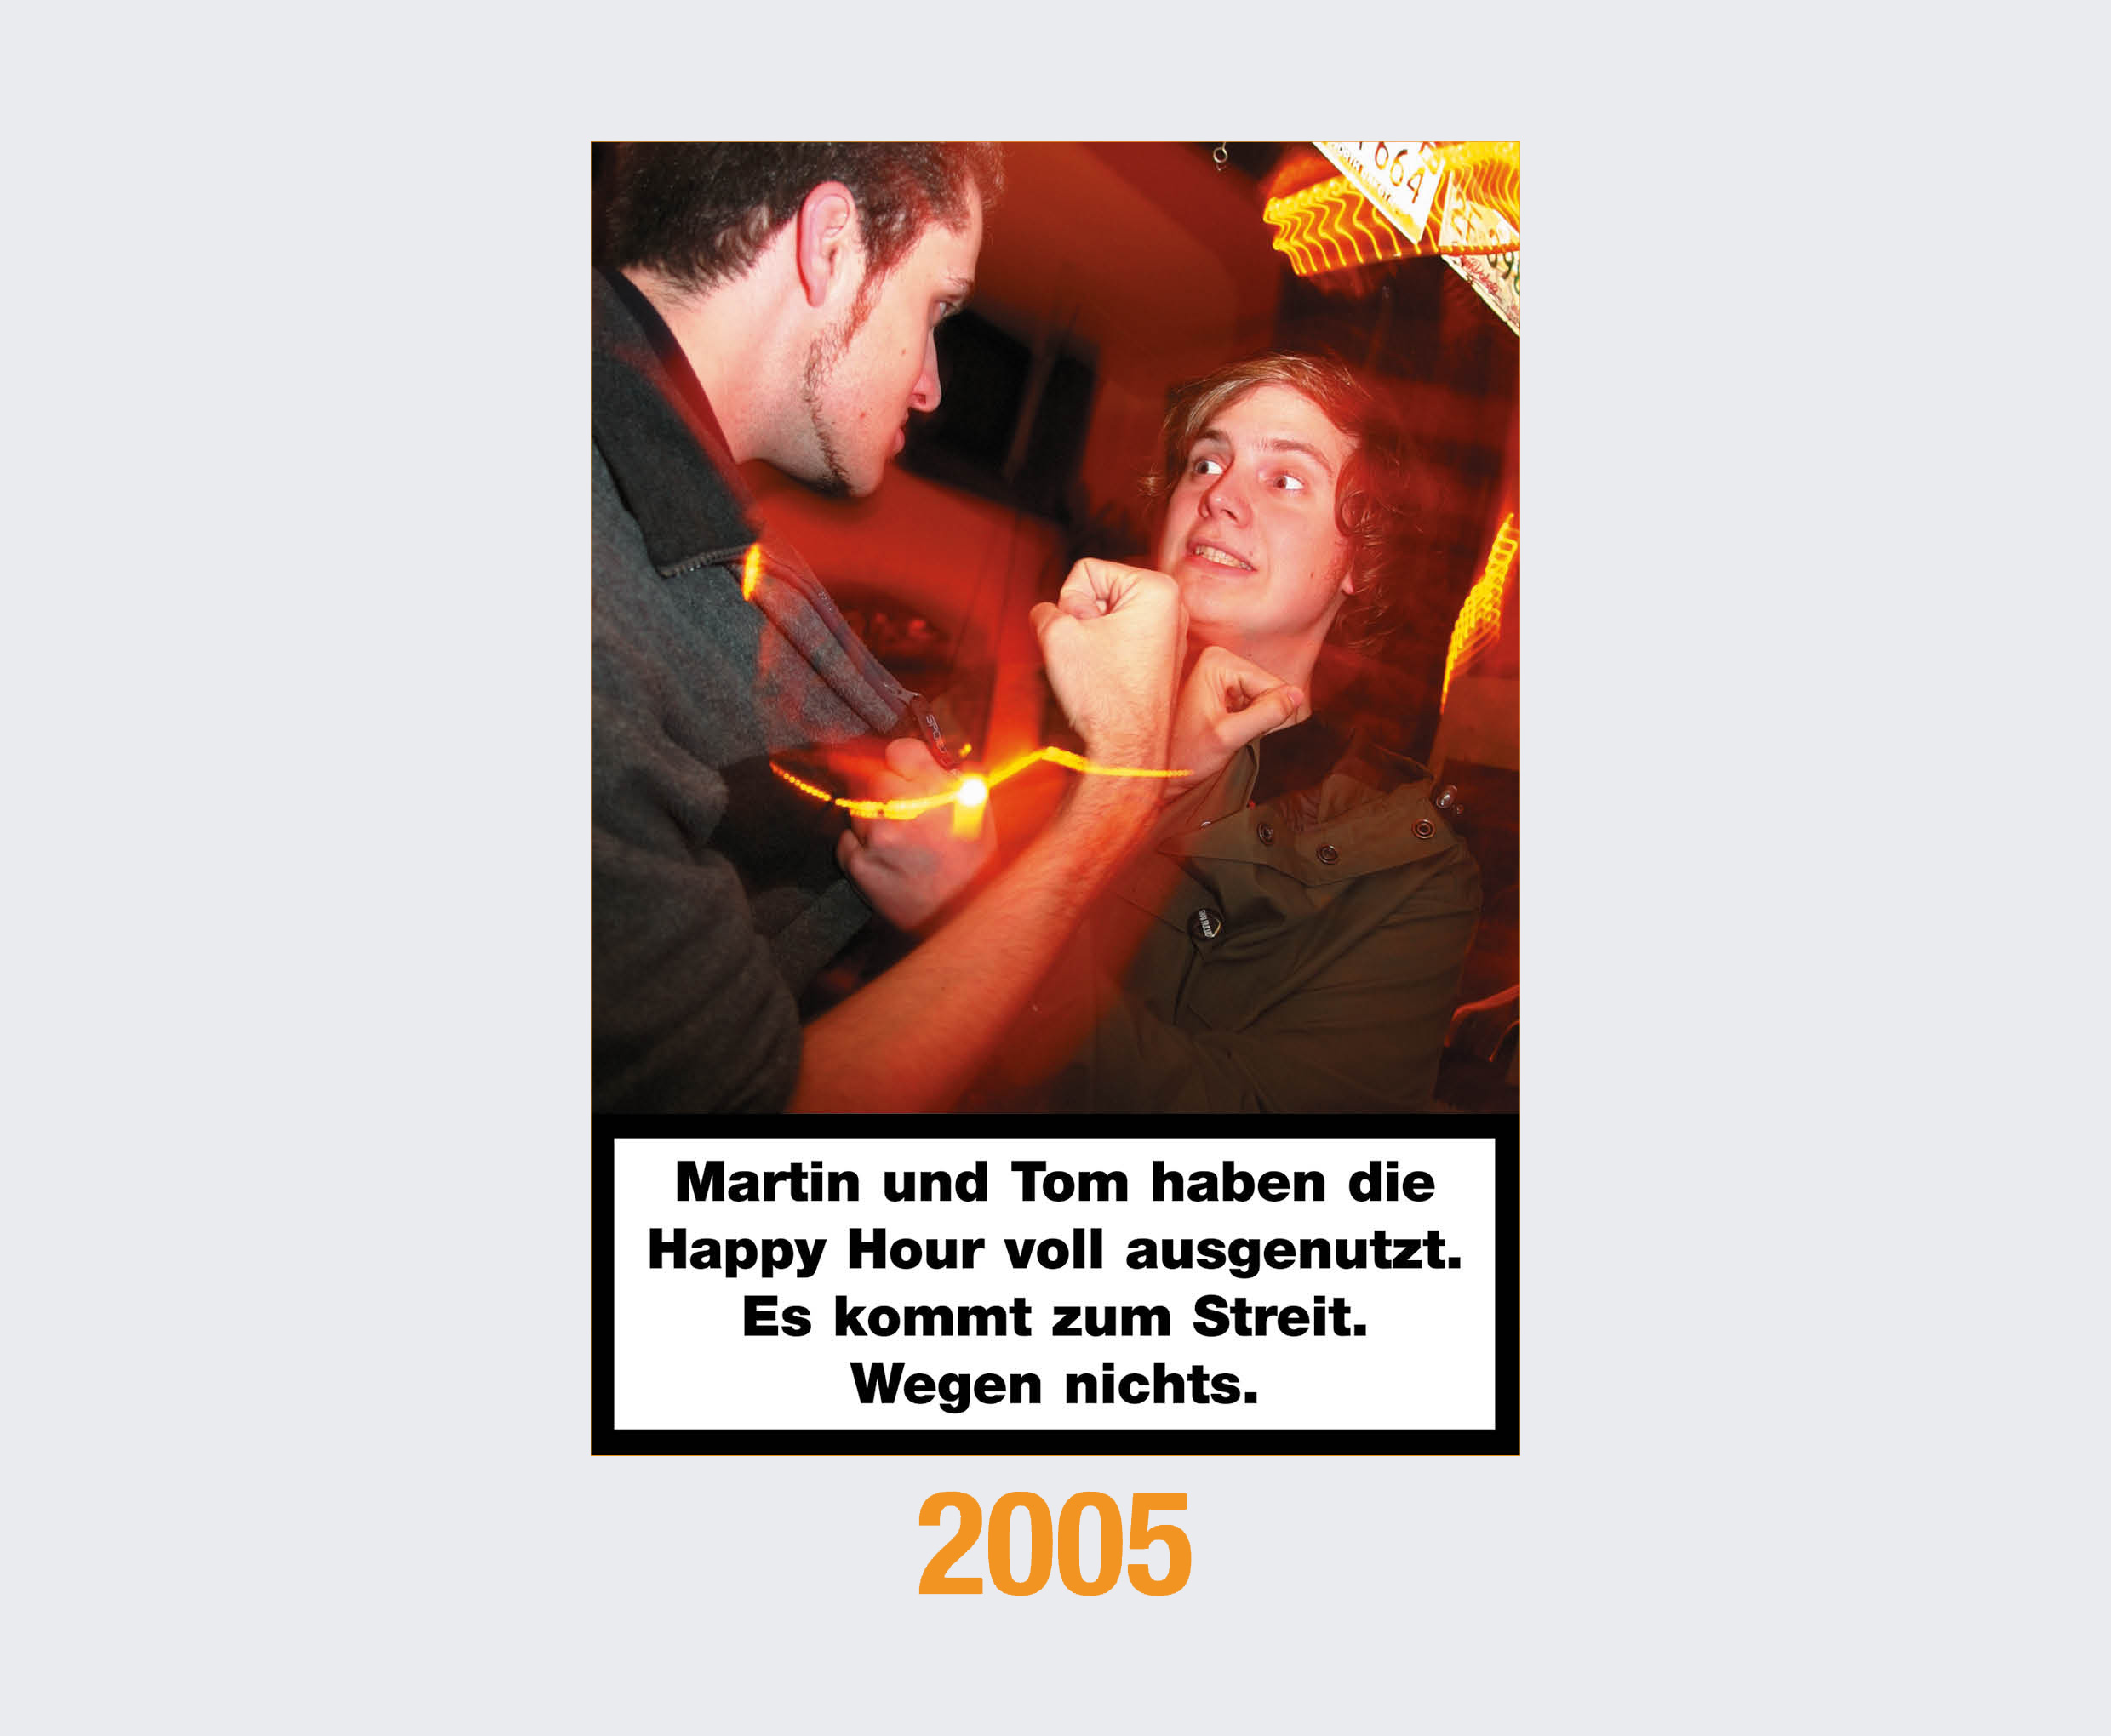 2005: Martin und Tom haben die Happy Hour voll ausgenutzt. Es kommt zum Streit. Wegen nichts. 